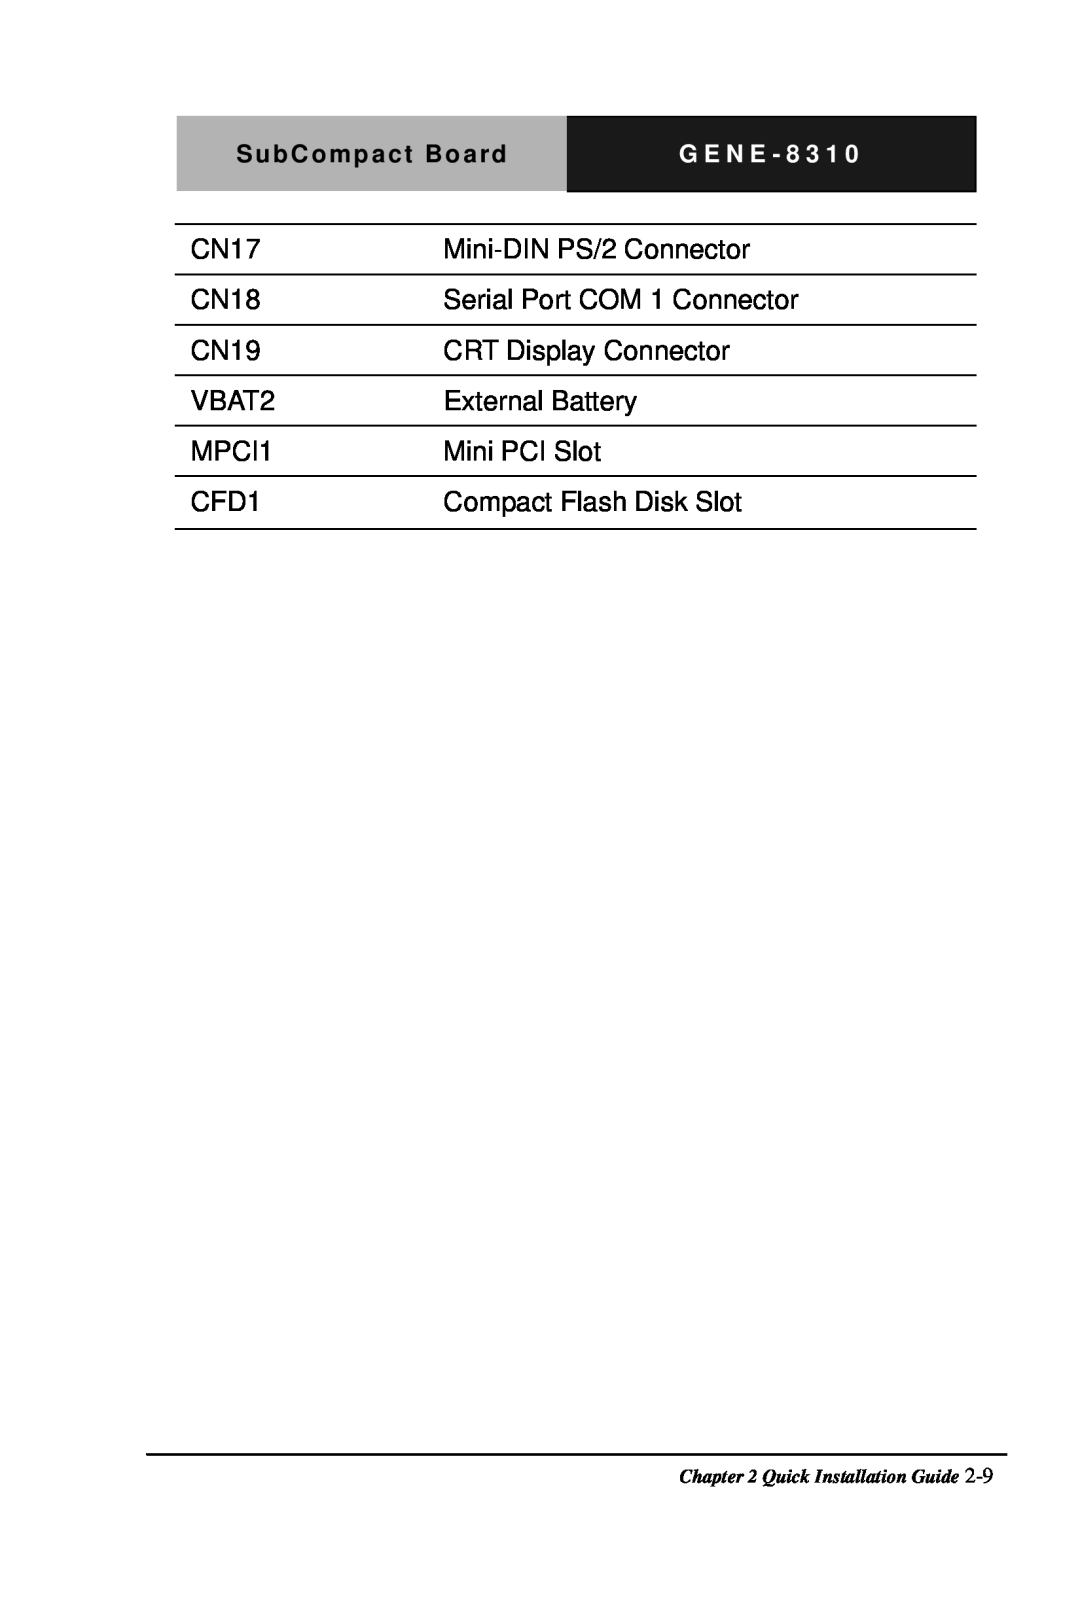 Intel GENE-8310 manual CN17 